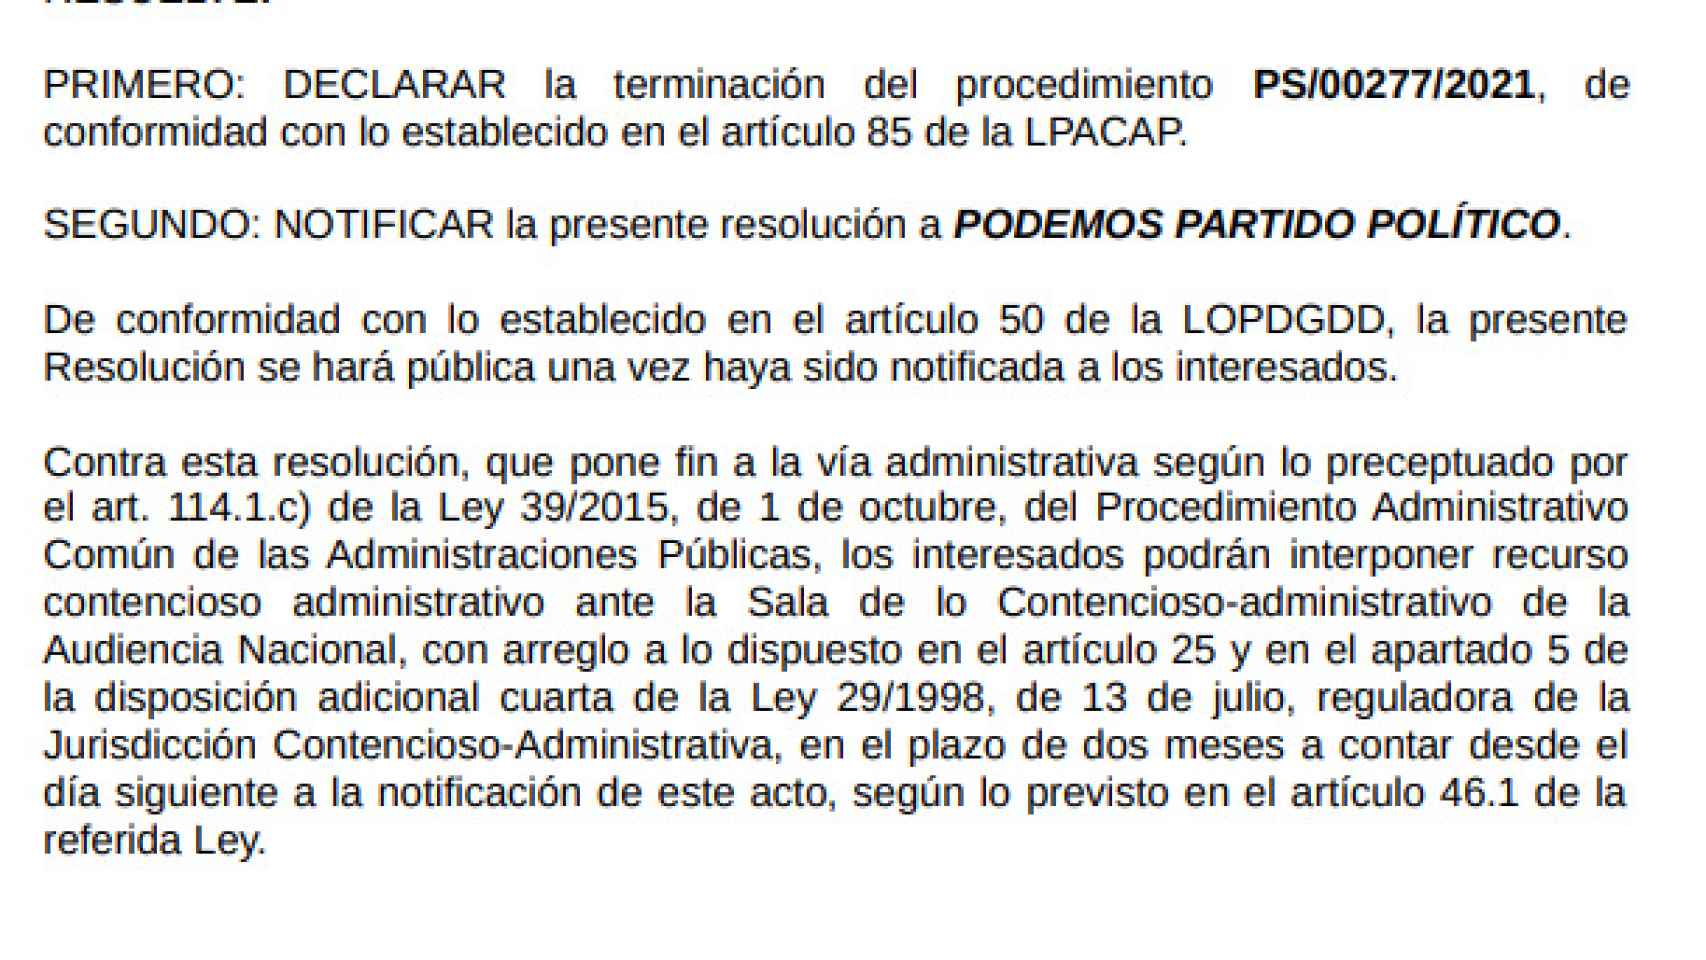 Resolución del expediente firmado por la directora de la AEPD, Mar España Martí.